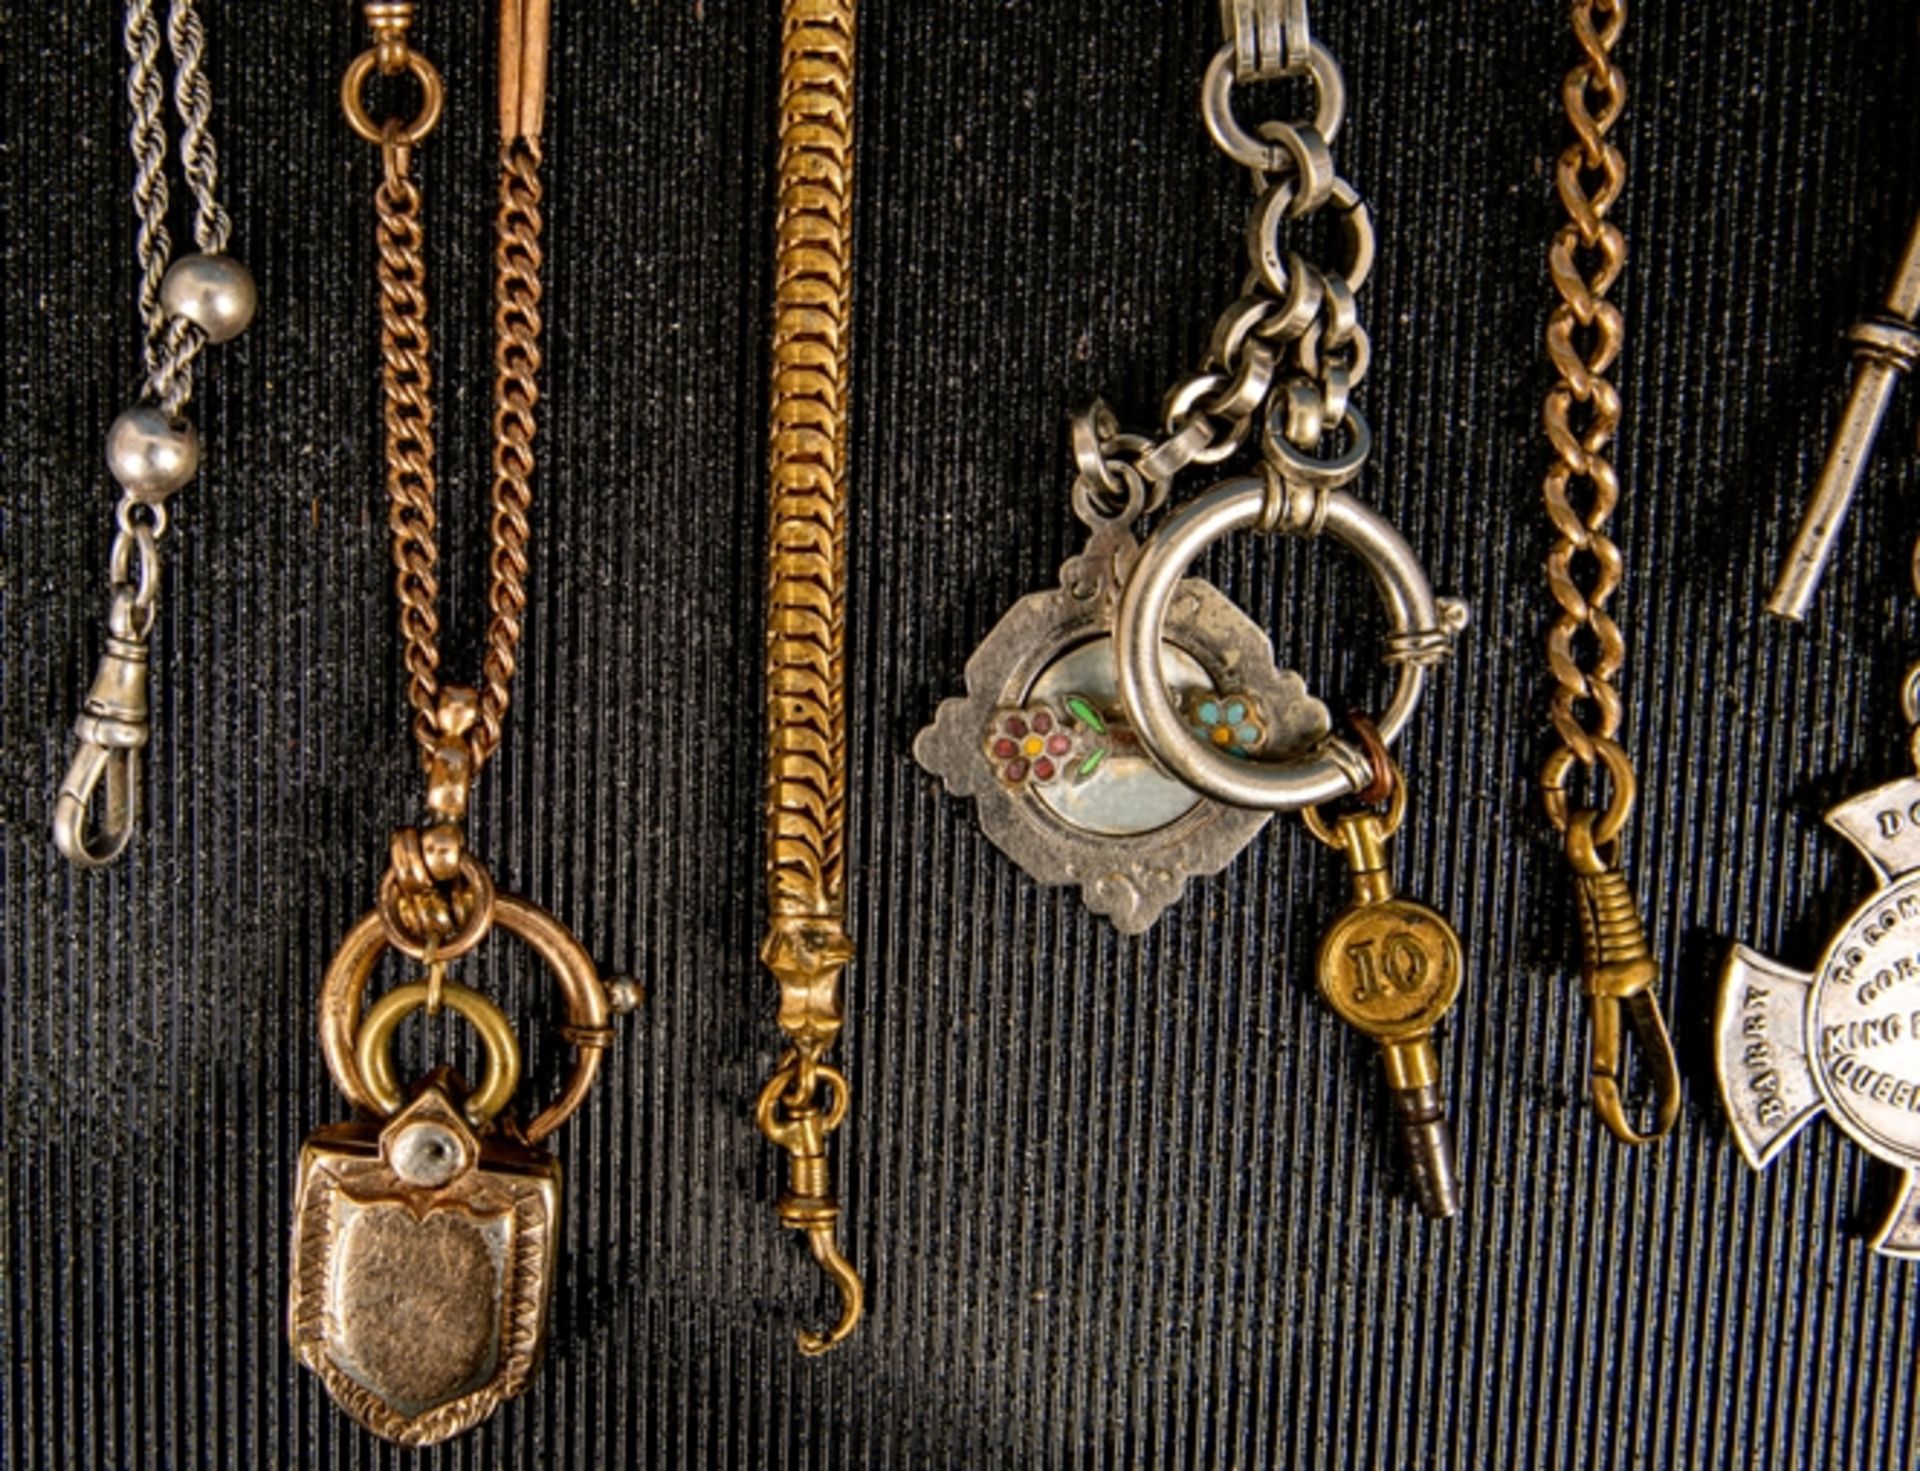 8teilige Sammlung versch. Taschenuhrenketten. Versch. Alter, Längen, Materialie - Bild 2 aus 6